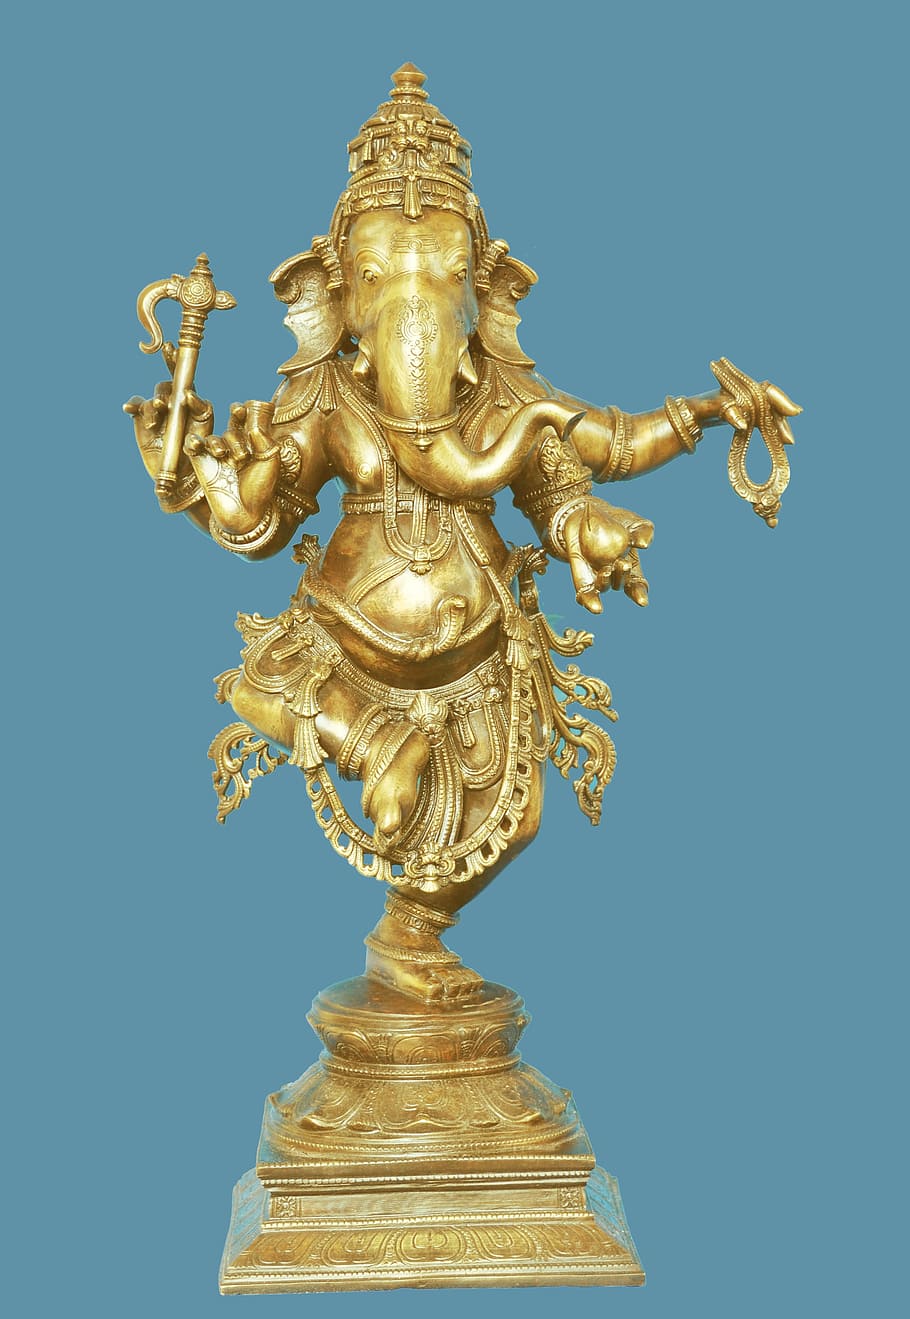 ガネーシャの置物, ダンスガネーシュ, 神, ヒンドゥー教, 象, 彫刻, 金色, 彫像, 金, 人なし